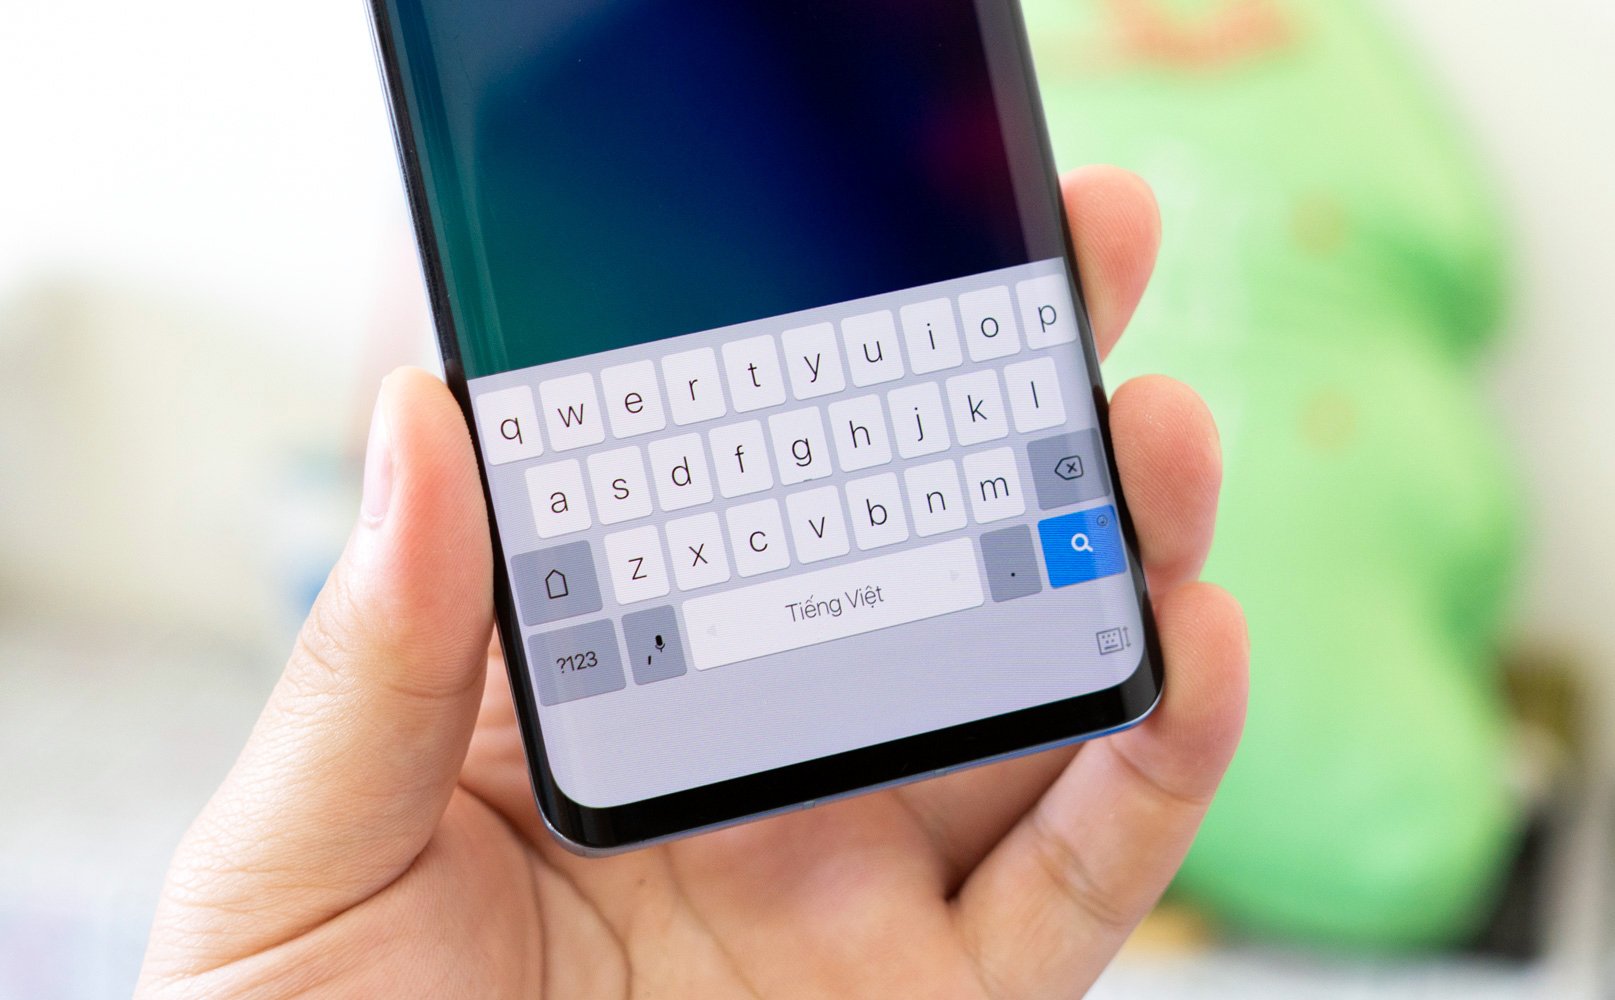 Laban Key: bàn phím tốt cho điện thoại Android viền mỏng vì có thể đội lên cao